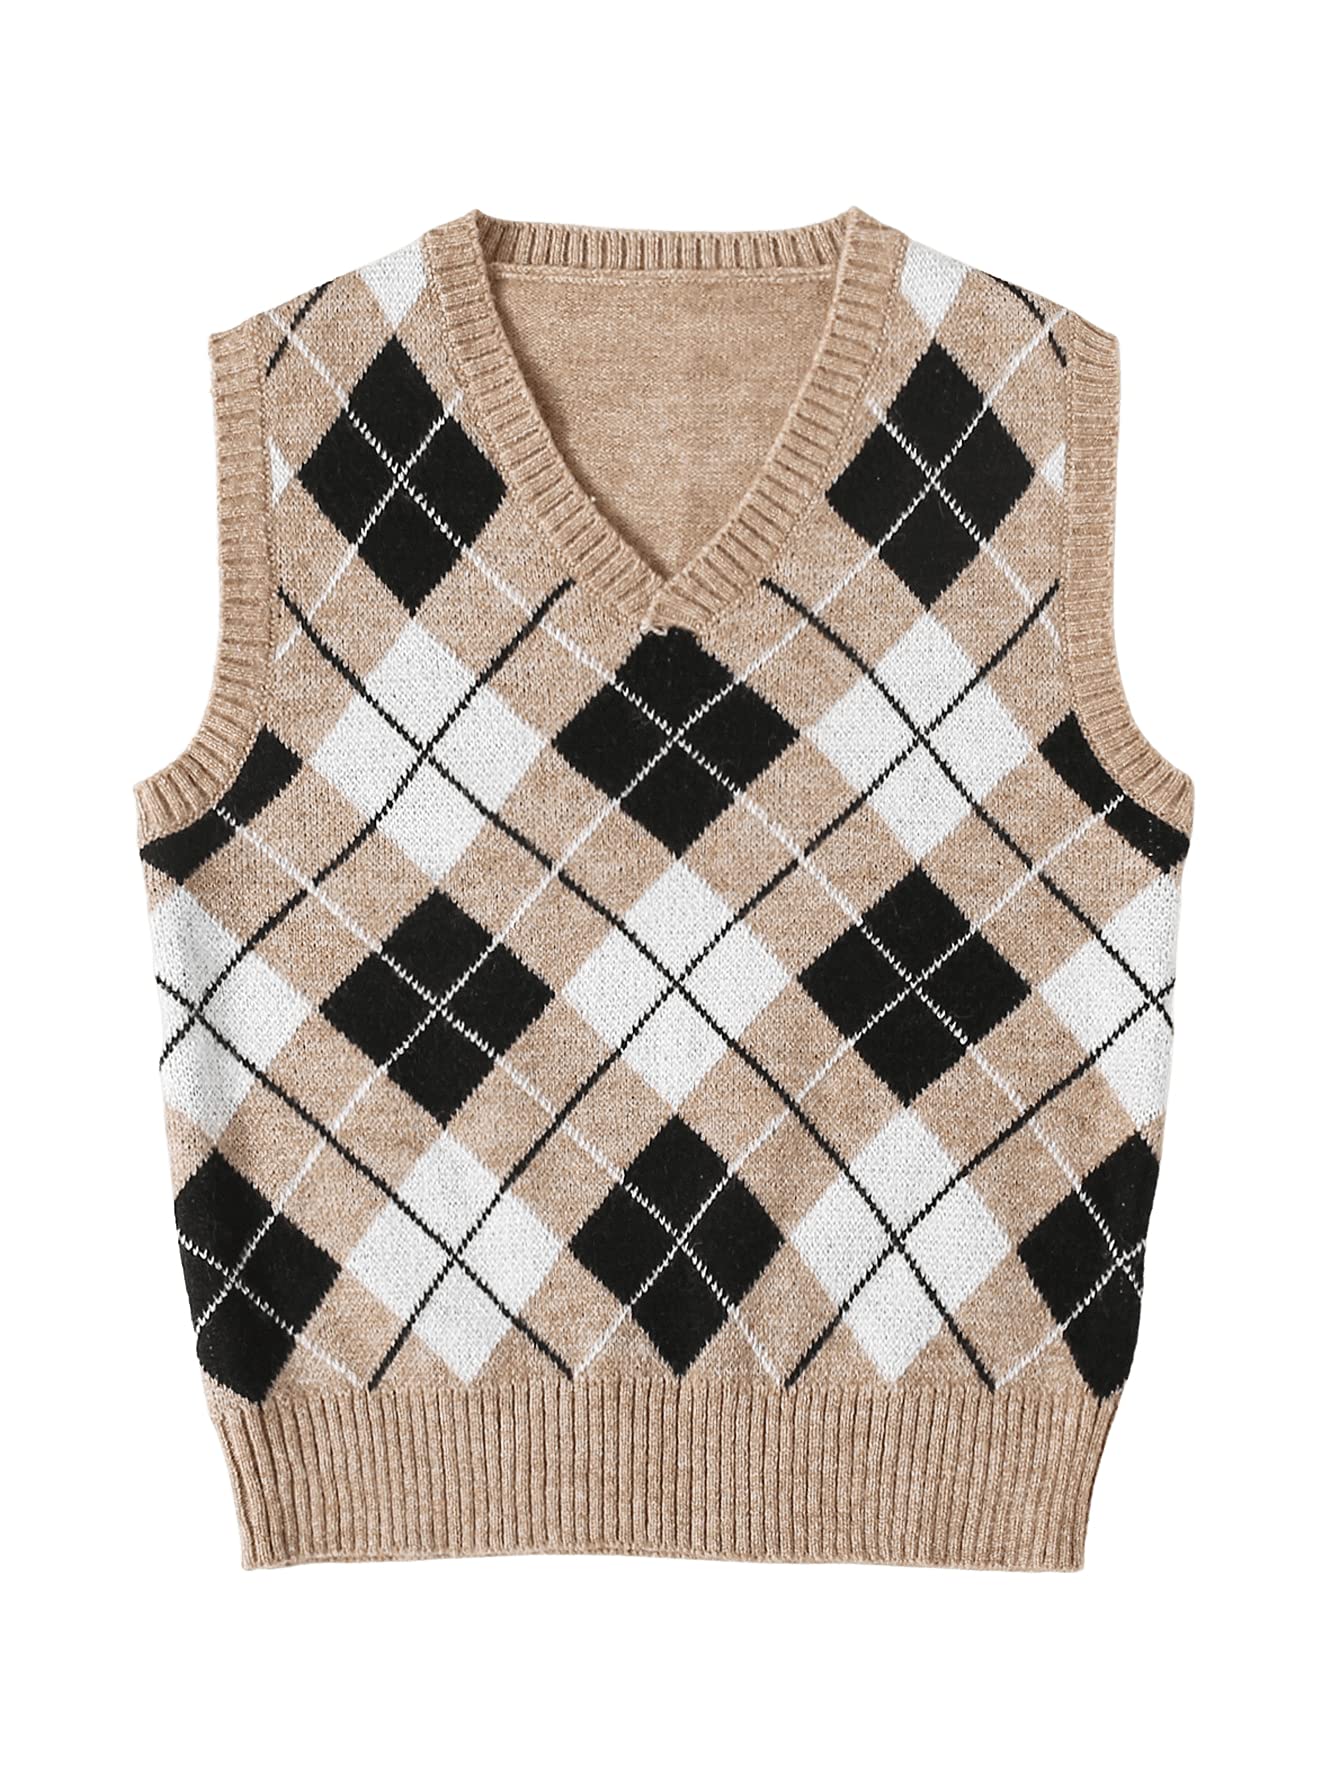 MakeMeChic + Argyle Print V Neck Sleeveless Sweater Vest Top